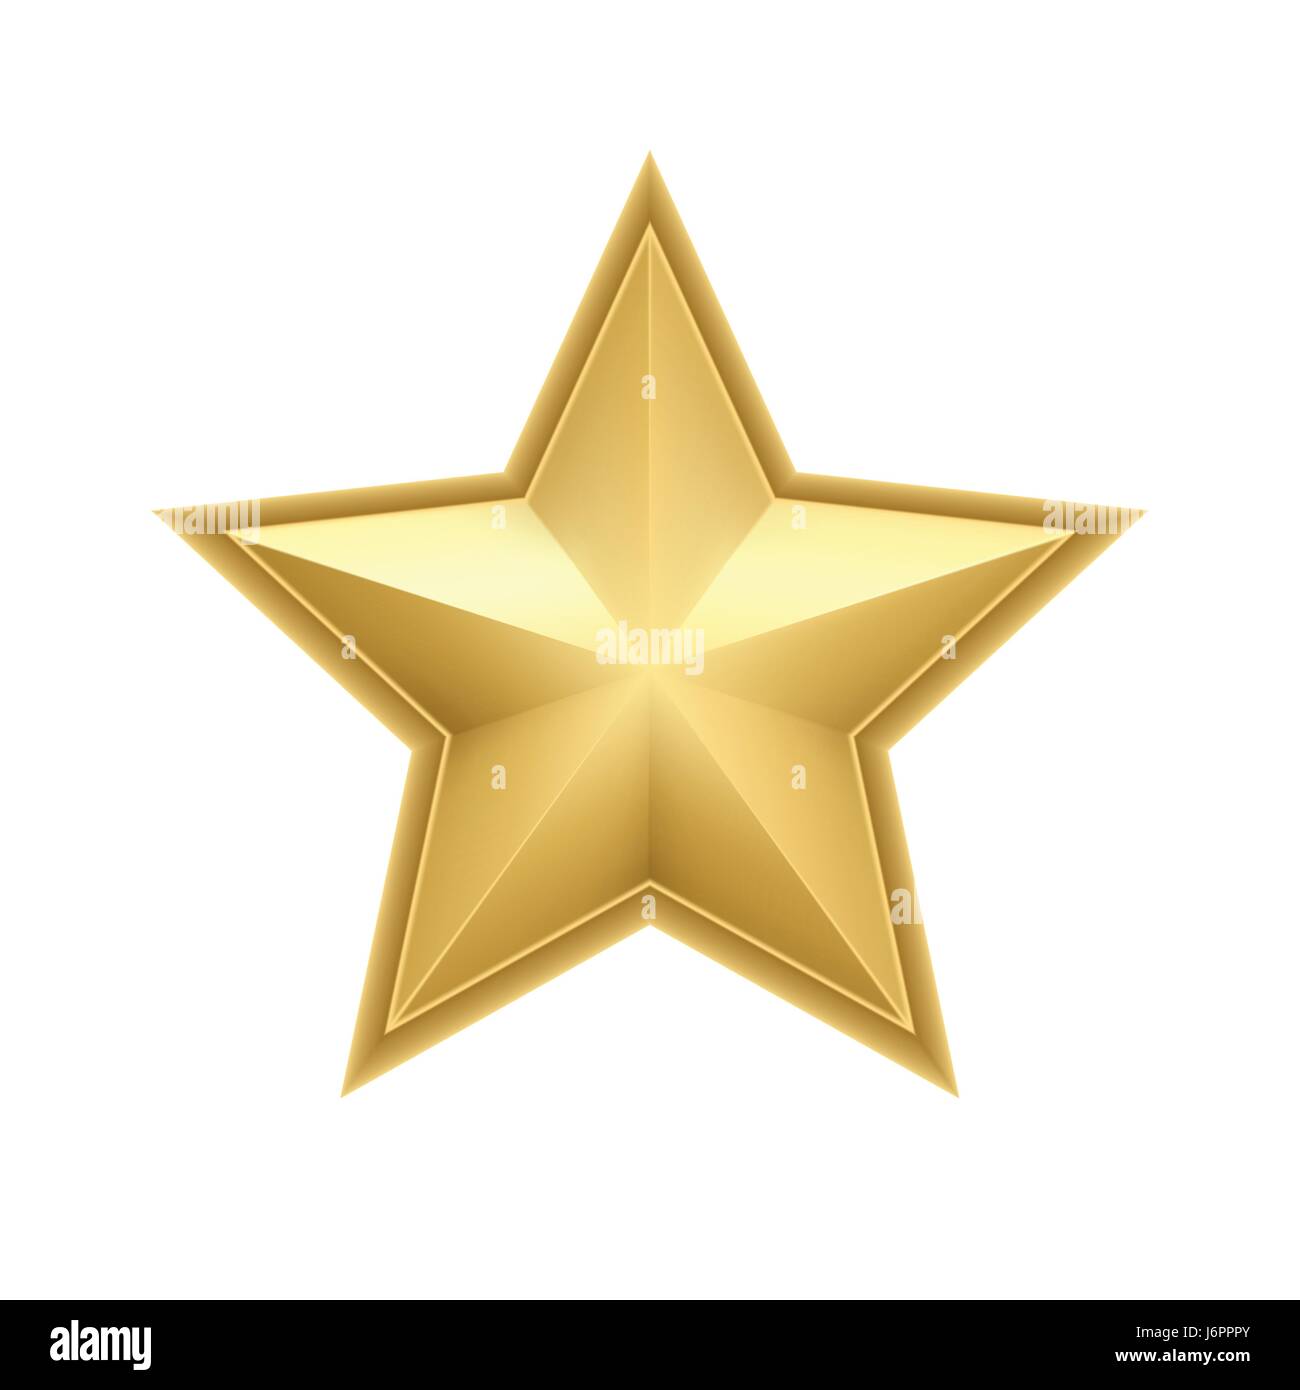 Realistische metallisch goldene Stern isoliert auf weißem Hintergrund. Vektor-illustration Stock Vektor